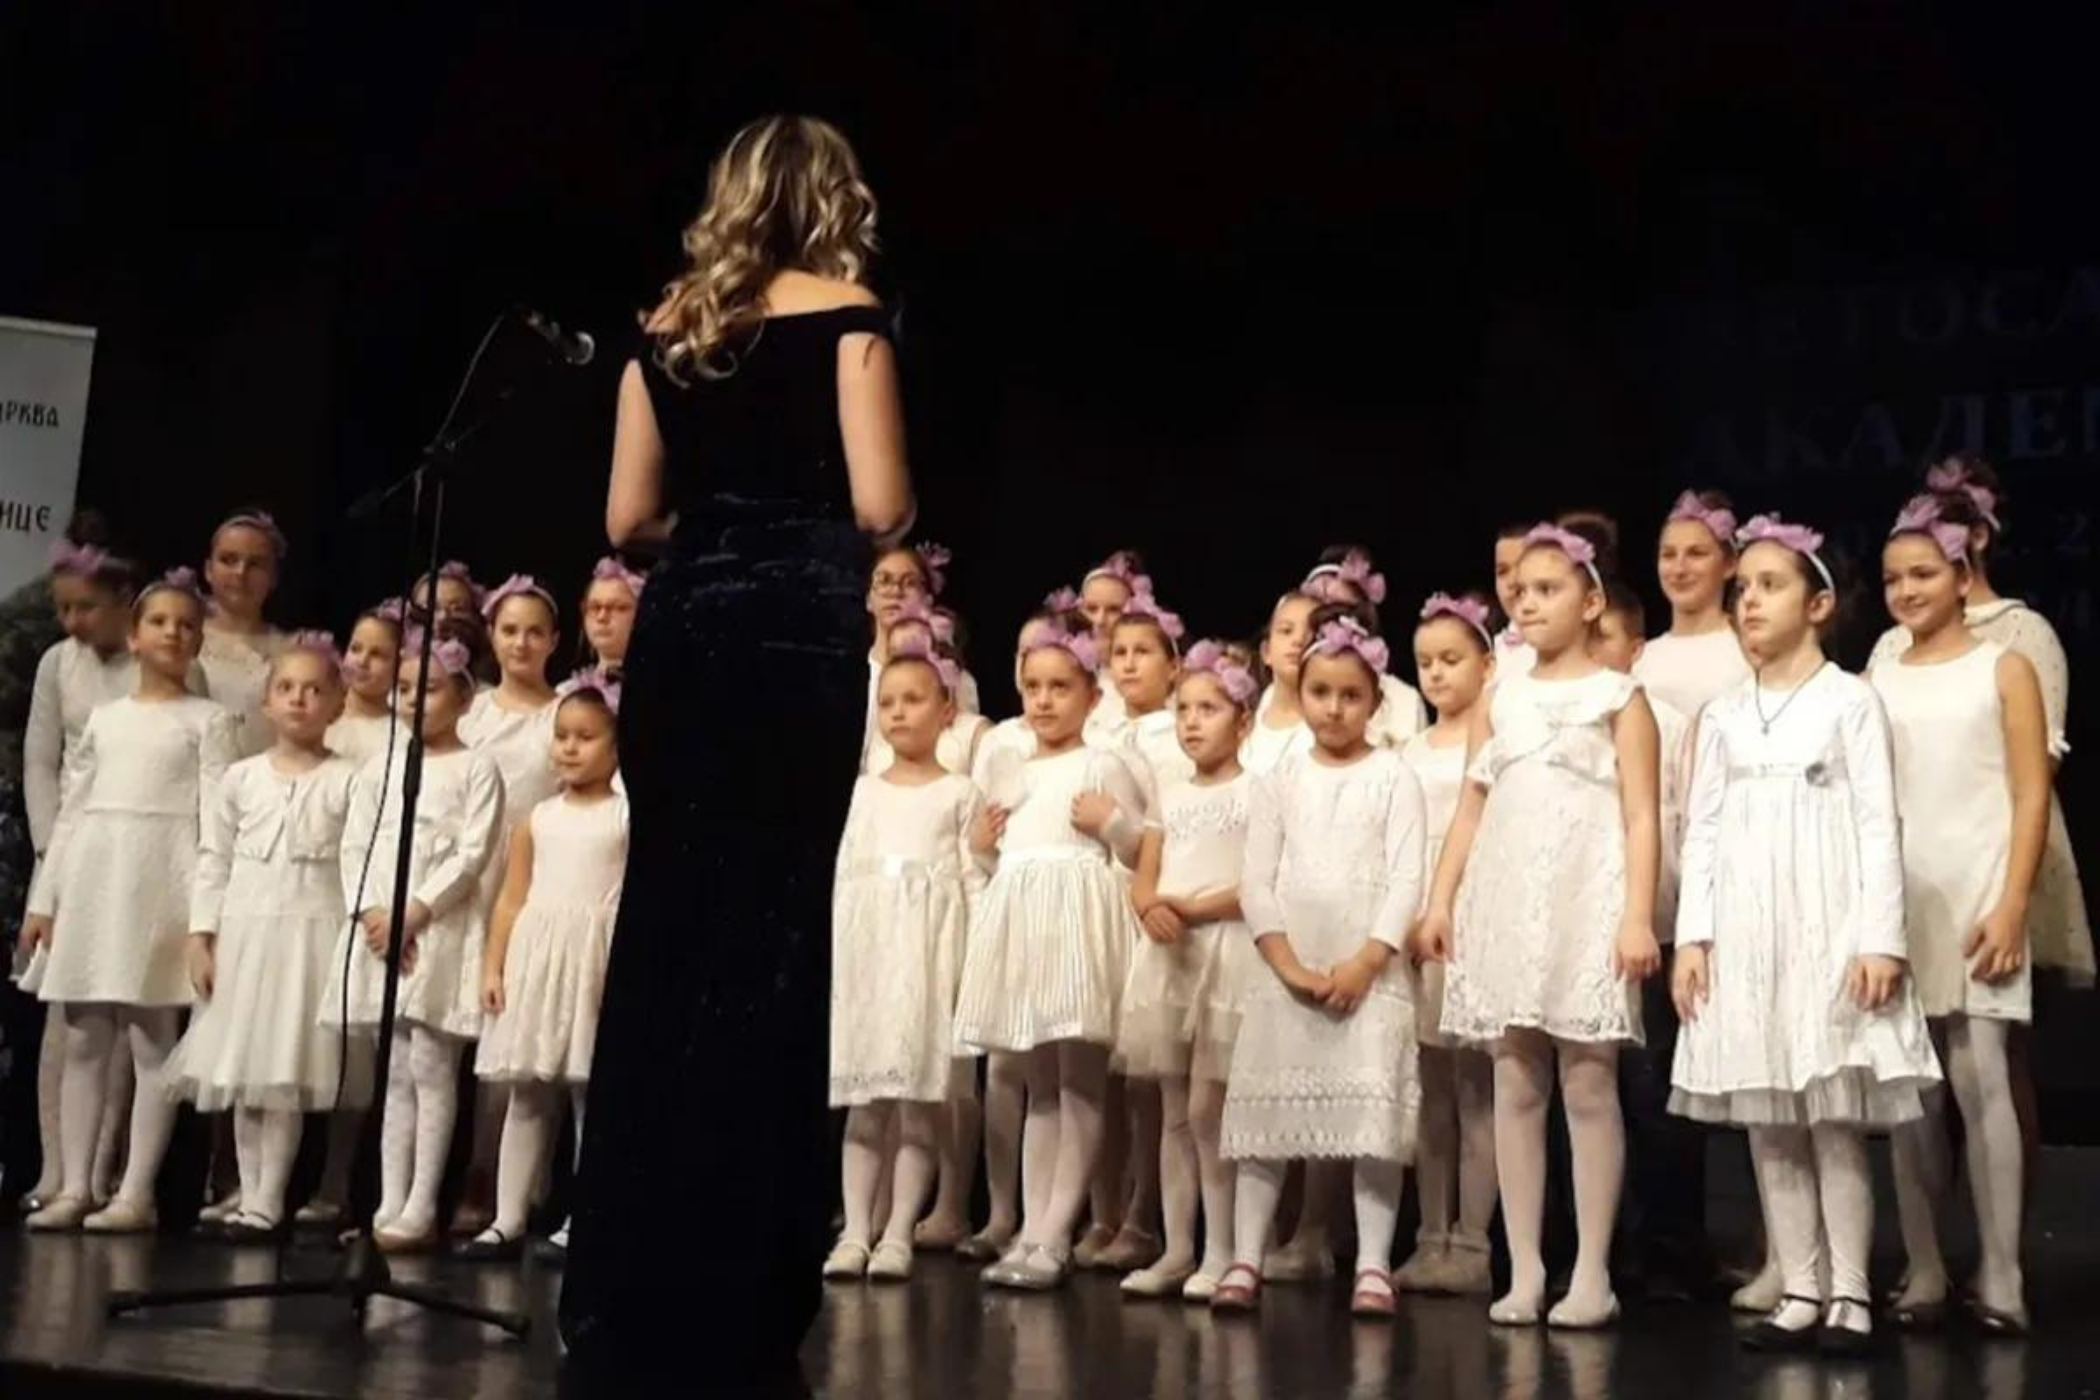 Viele kleine Mädchen in weißen Kleidern und rosa Schleife auf dem Kopf stehen in einer Reihe auf einer Bühne, davor mit dem Rücken zu uns eine Frau in einem langen schwarzen Abendkleid.